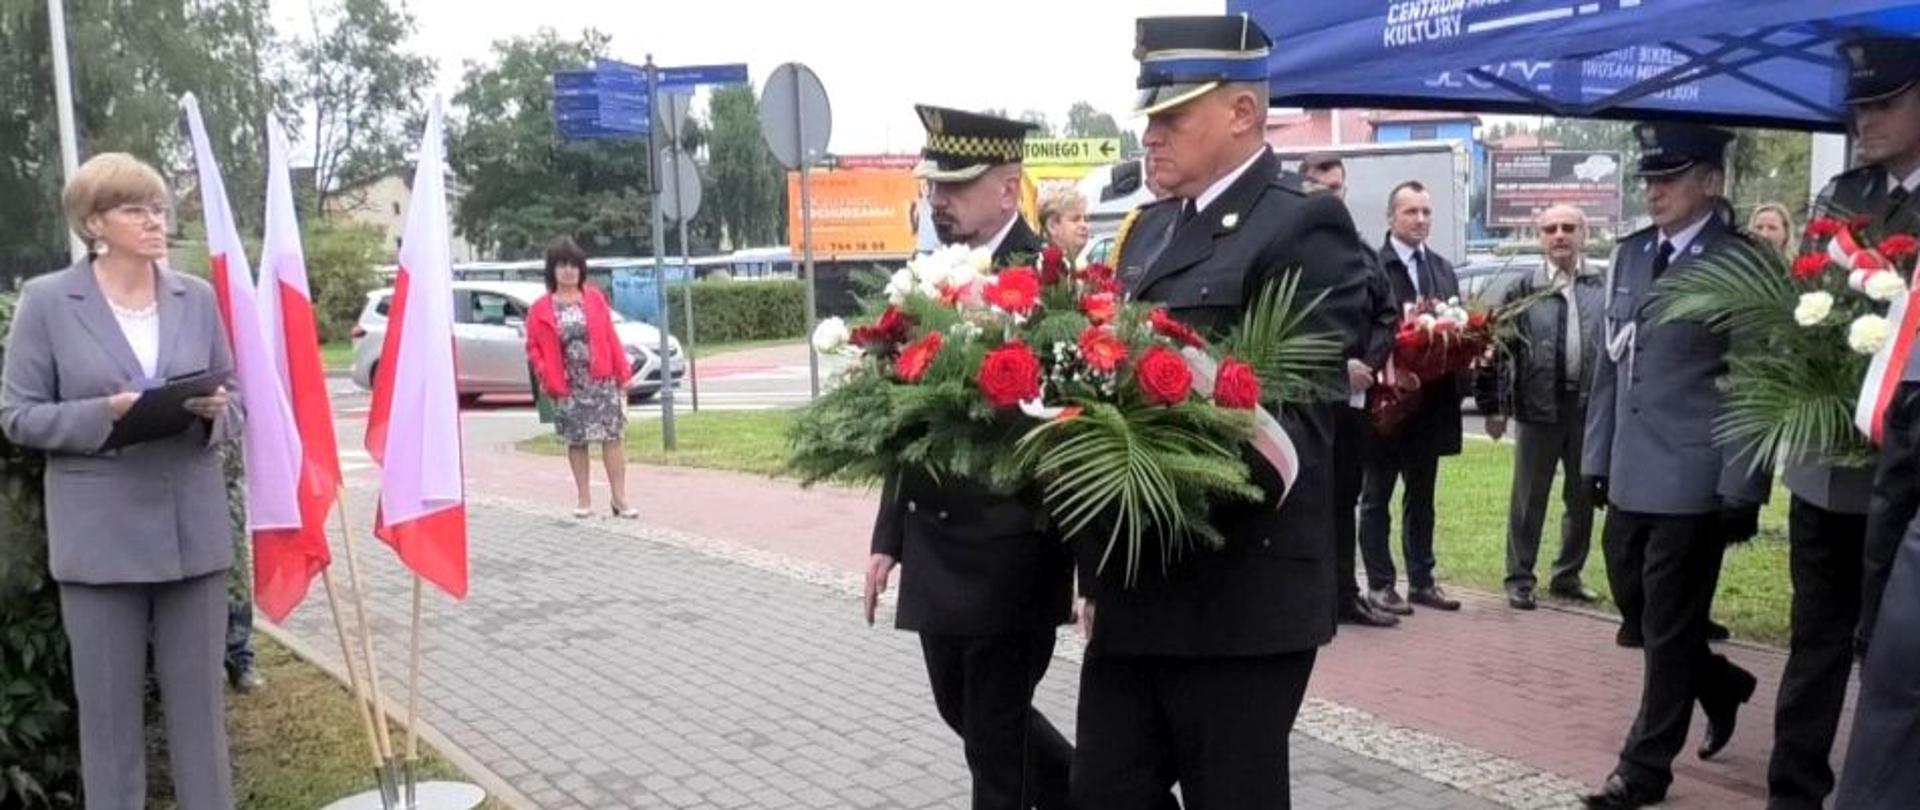 Strażak i strażnik miejski stoją i trzymają w rękach kwiaty. Za nimi stoją policjanci . w tle widać kobietę i dwóch mężczyzn. Na trawniku po lewej stroni stoi kobieta . Obok niej są trzy biało-czerwone flagi.